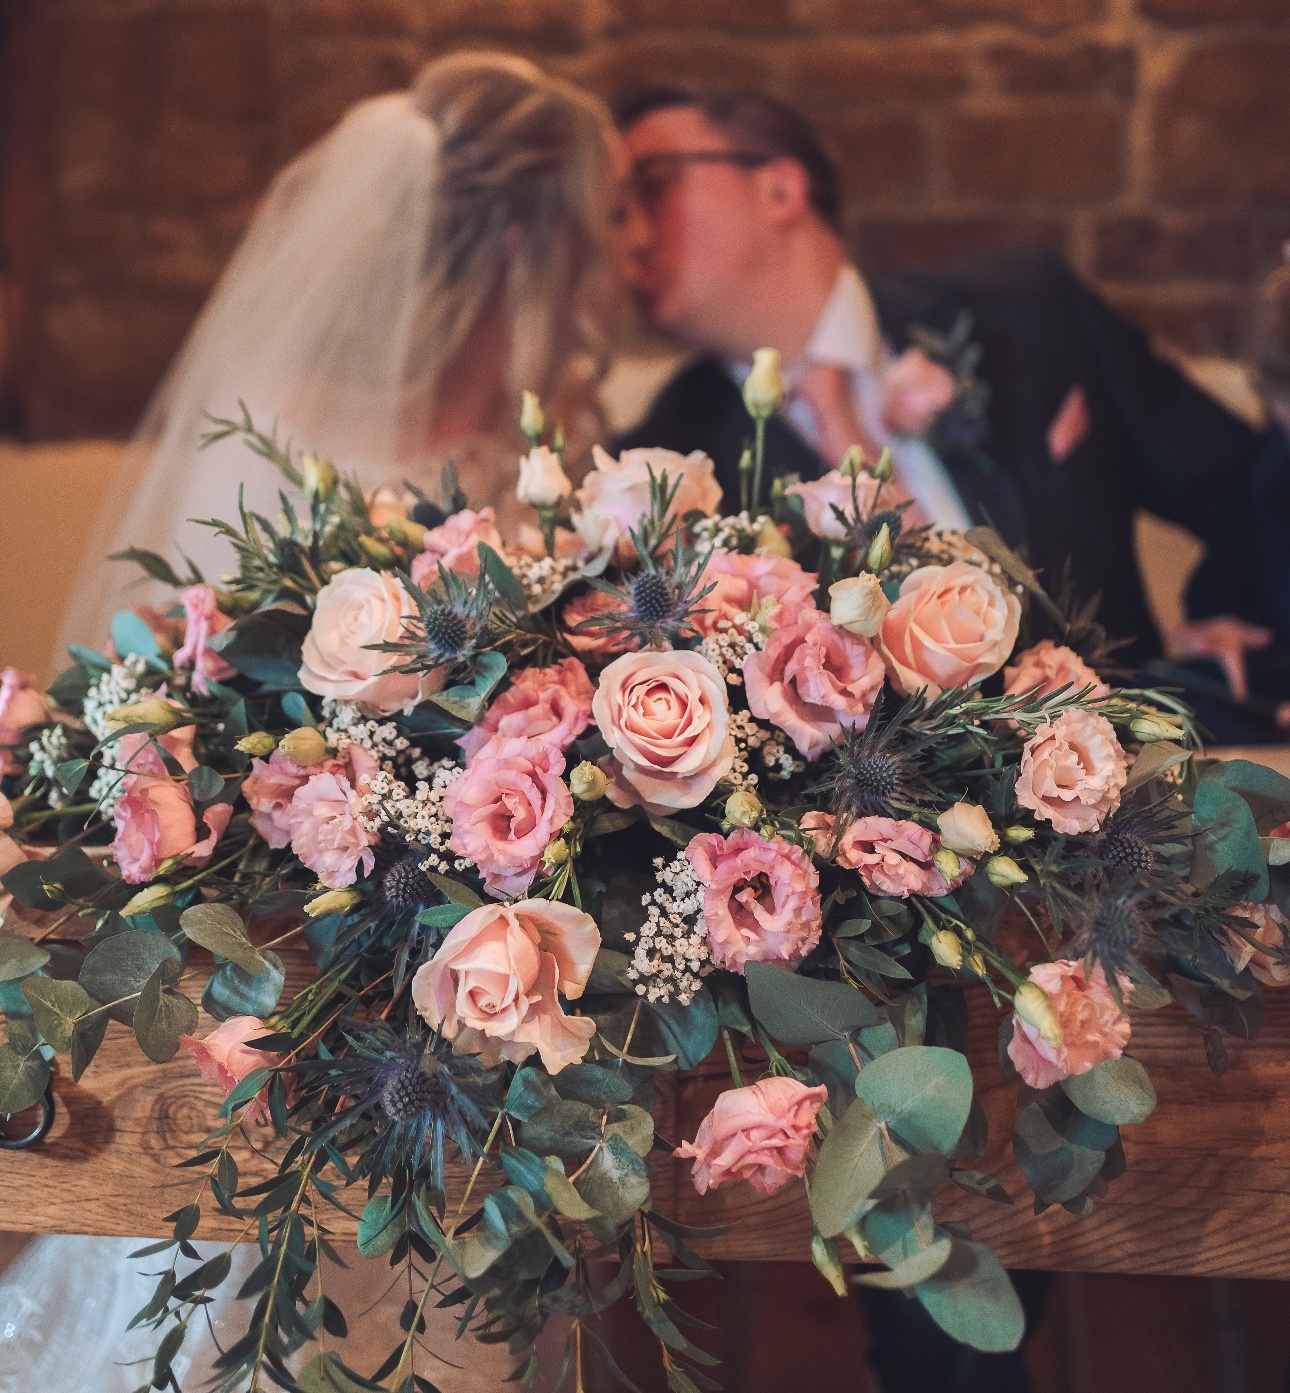 Bride's bouquet infront of couple kissing